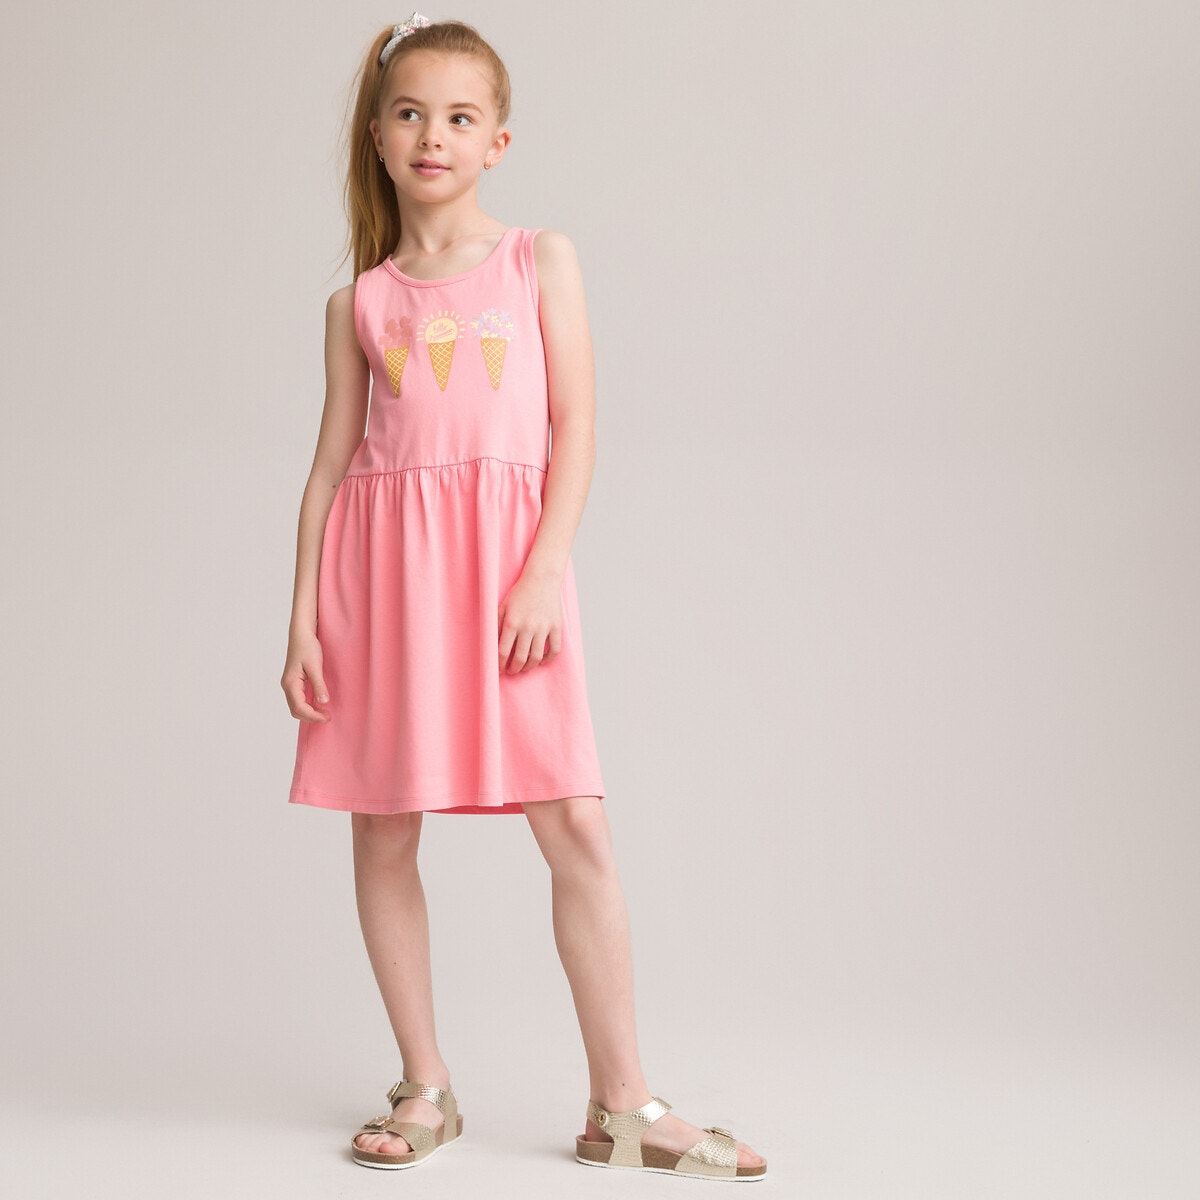 ΠΑΙΔΙ | Φορέματα | Κοντά μανίκια Σετ 2 αμάνικα φορέματα, 3-12 ετών